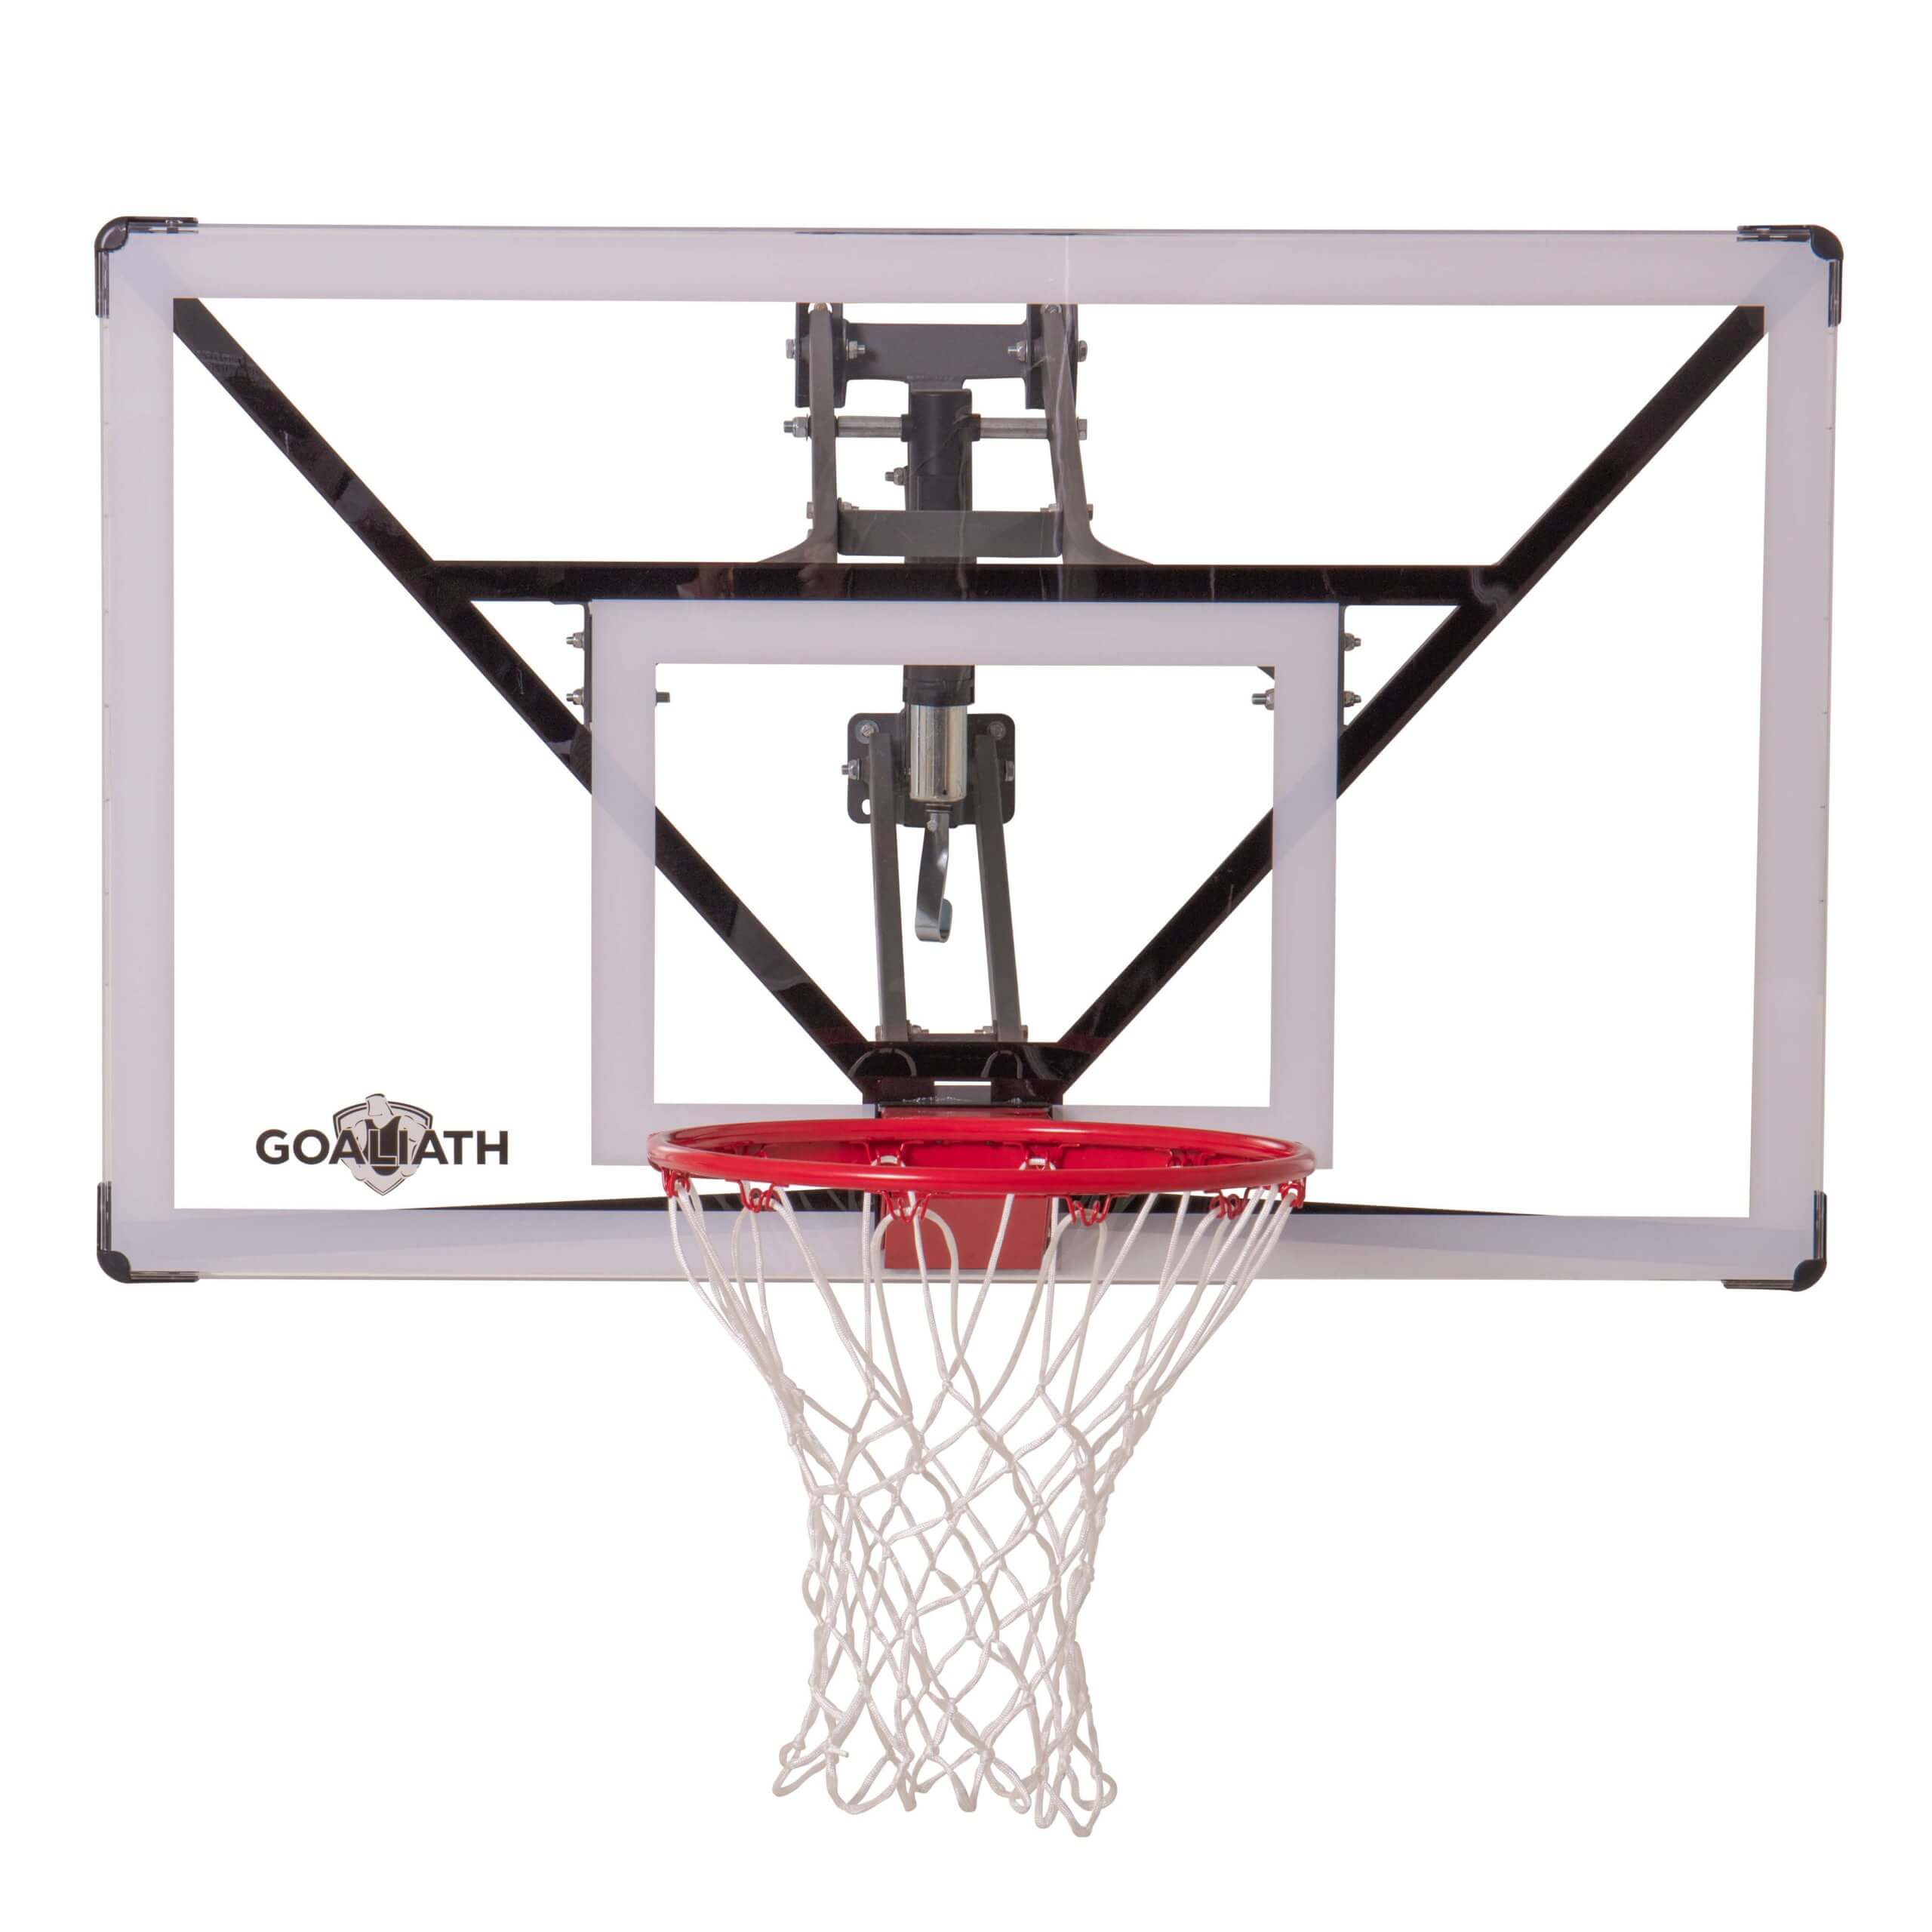 SPORTNOW Panier de basketball mural panier spécial dunk - 113L x 73H cm -  filet toutes saisons pour l'intérieur et l'extérieur